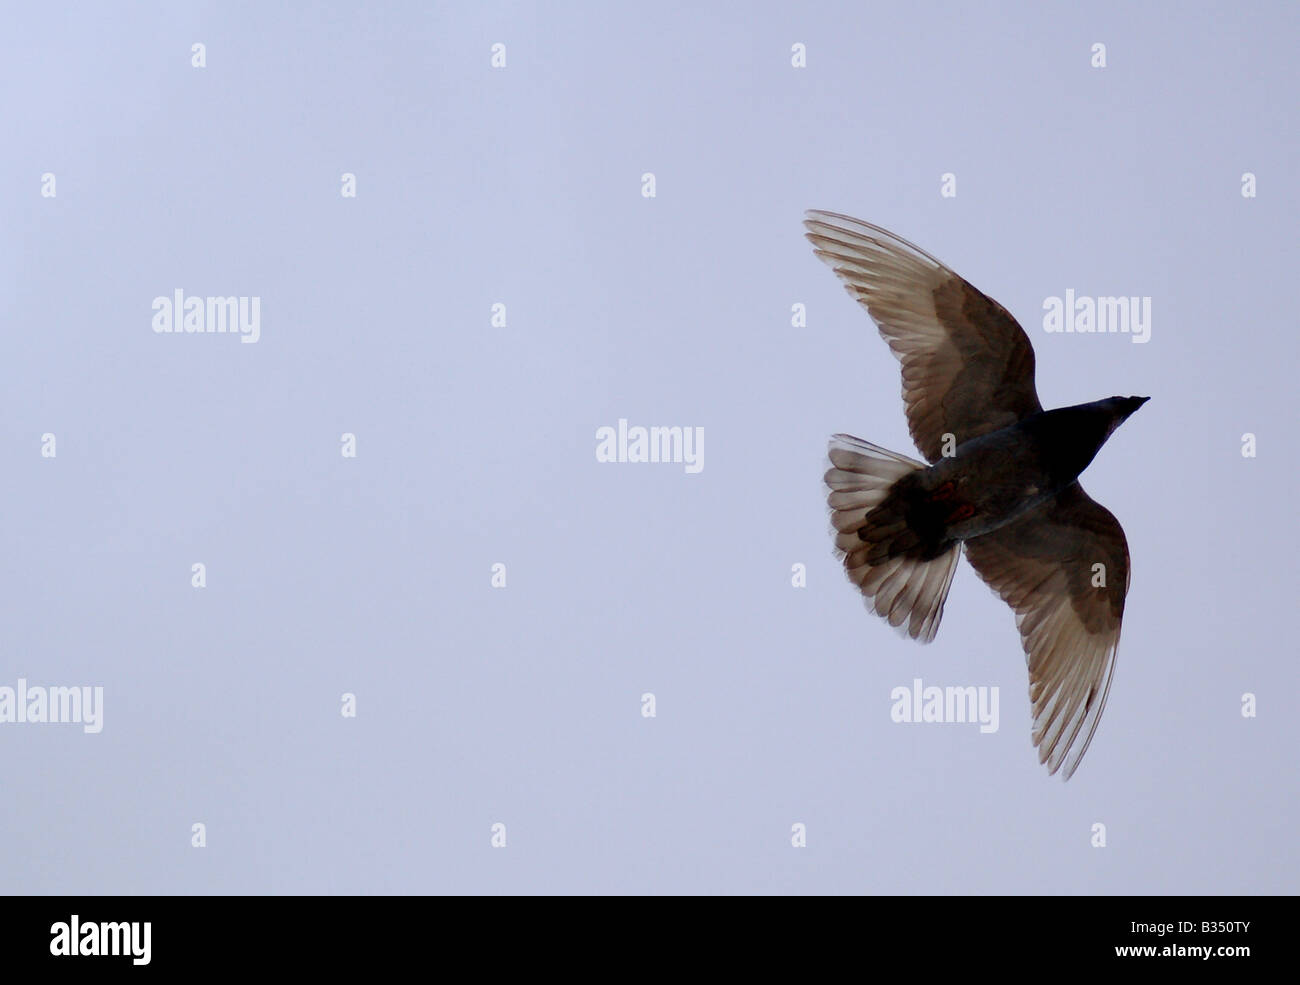 A bird flying overhead against a blue sky. Stock Photo